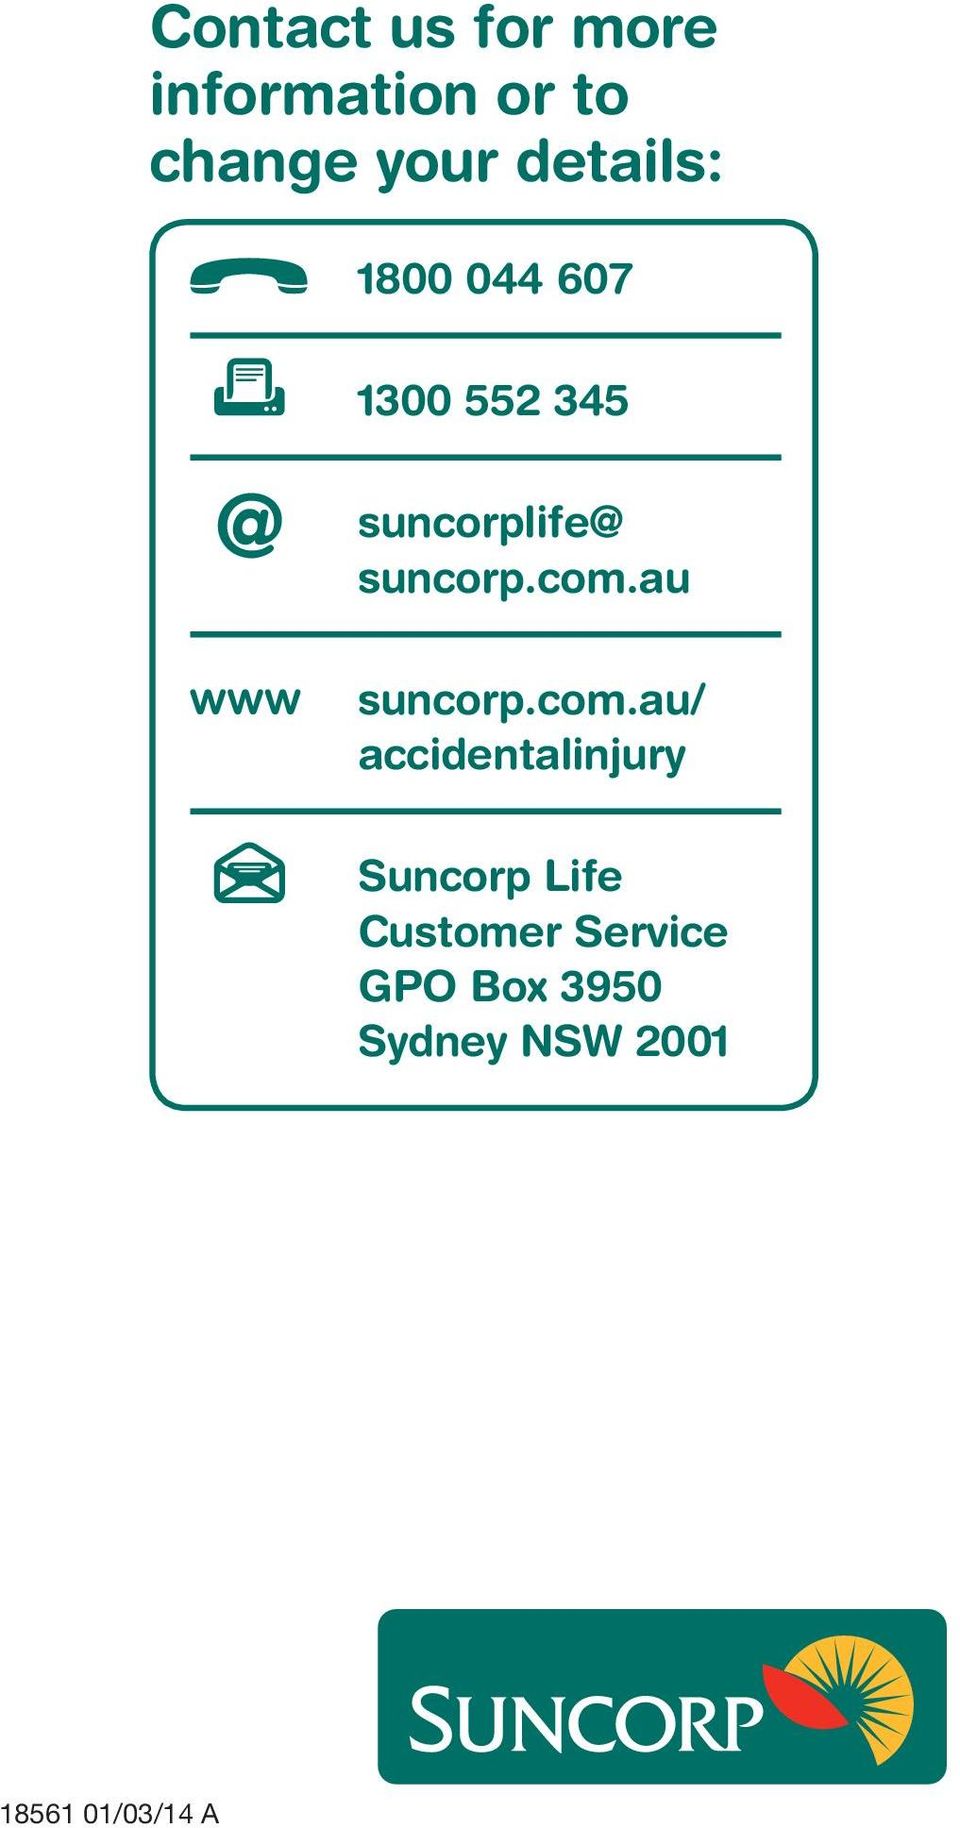 suncorp.com.